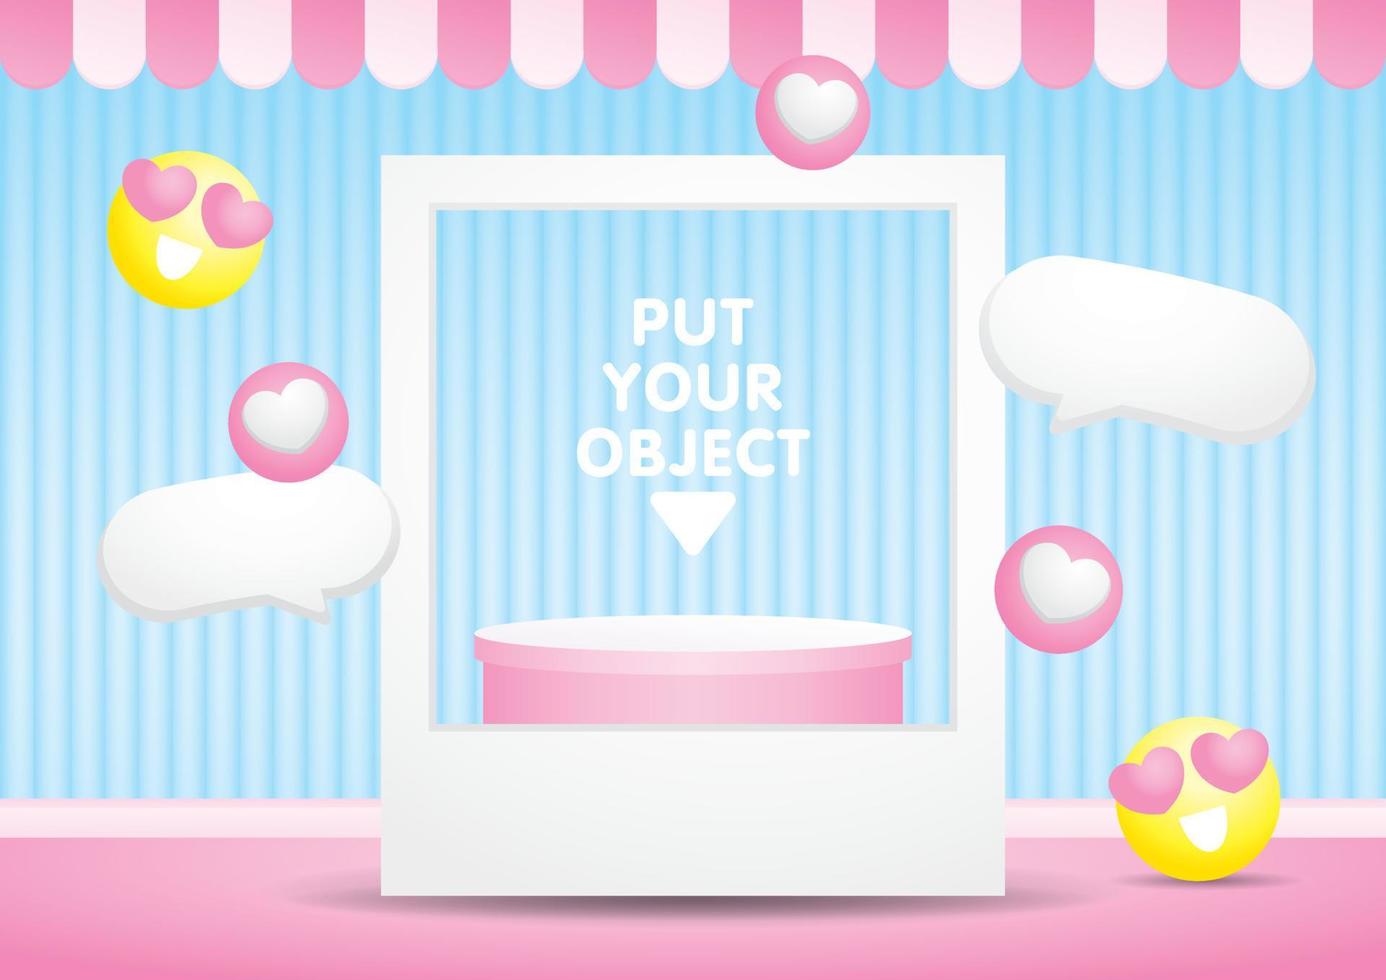 schattig pastel roze podium Scherm met afbeelding kader en emoticon grafisch elementen 3d illustratie vector voor zetten uw voorwerp